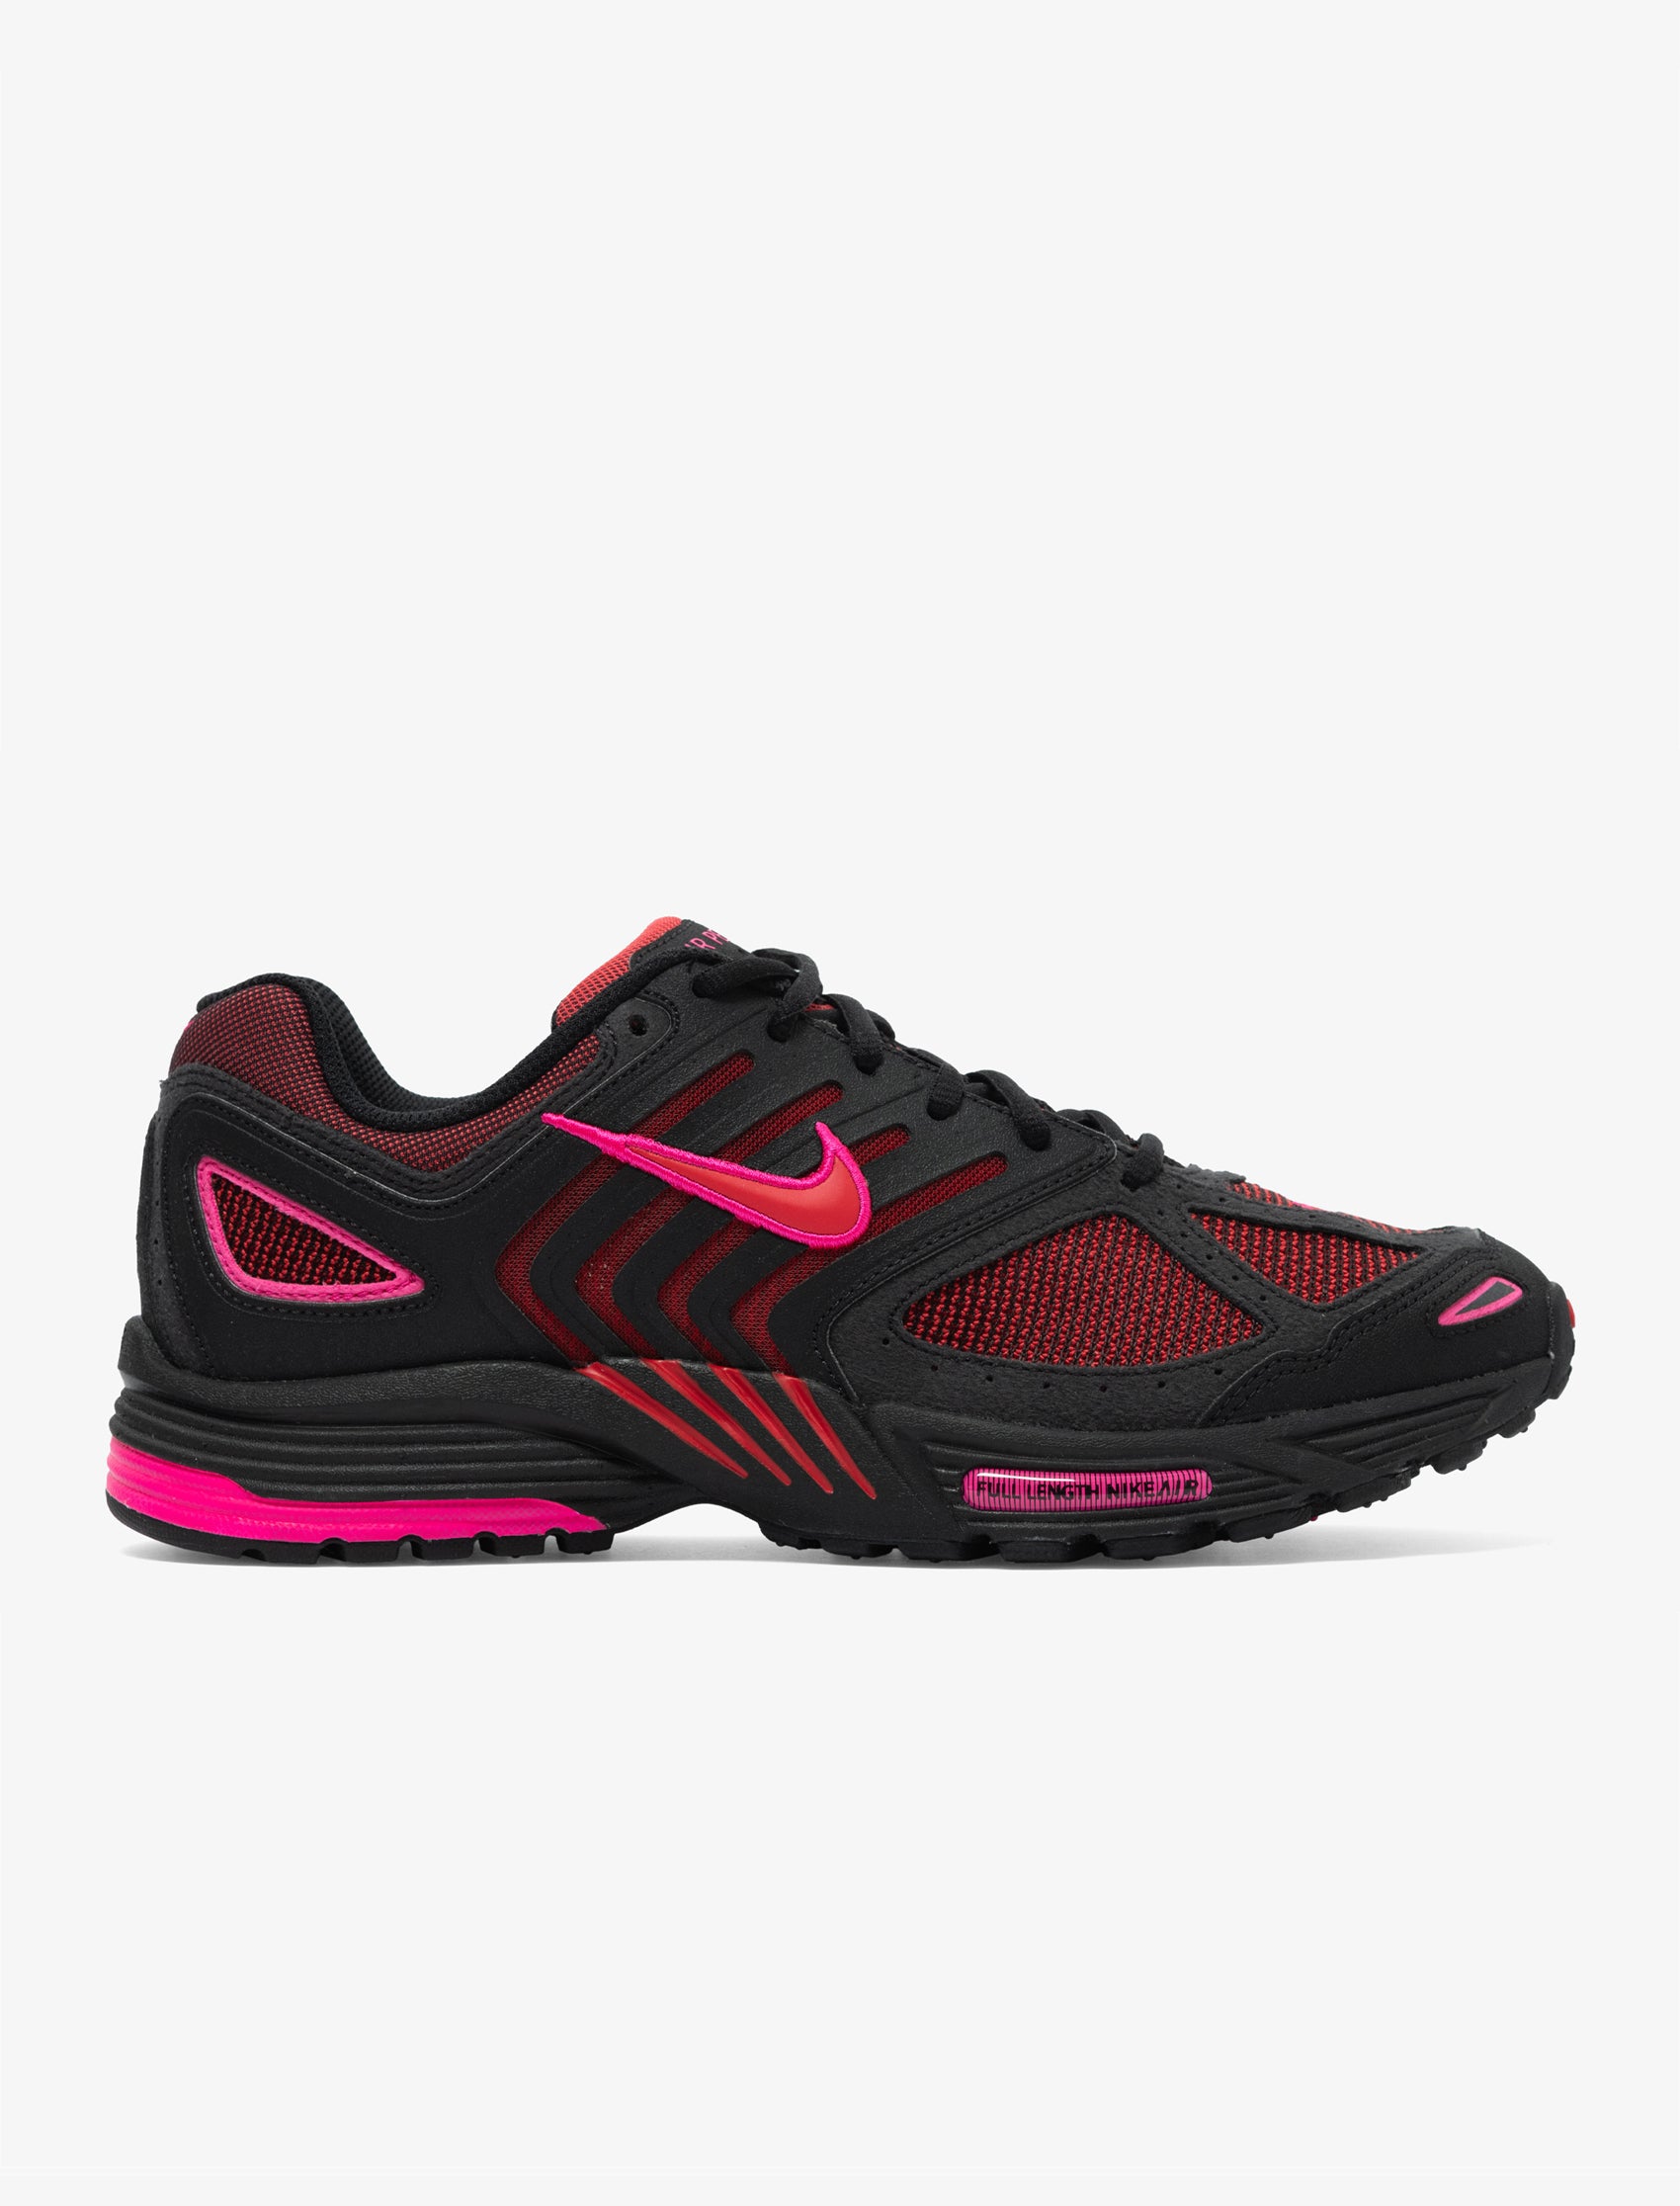 Nike Air Peg 2K5 (Black/Pink)